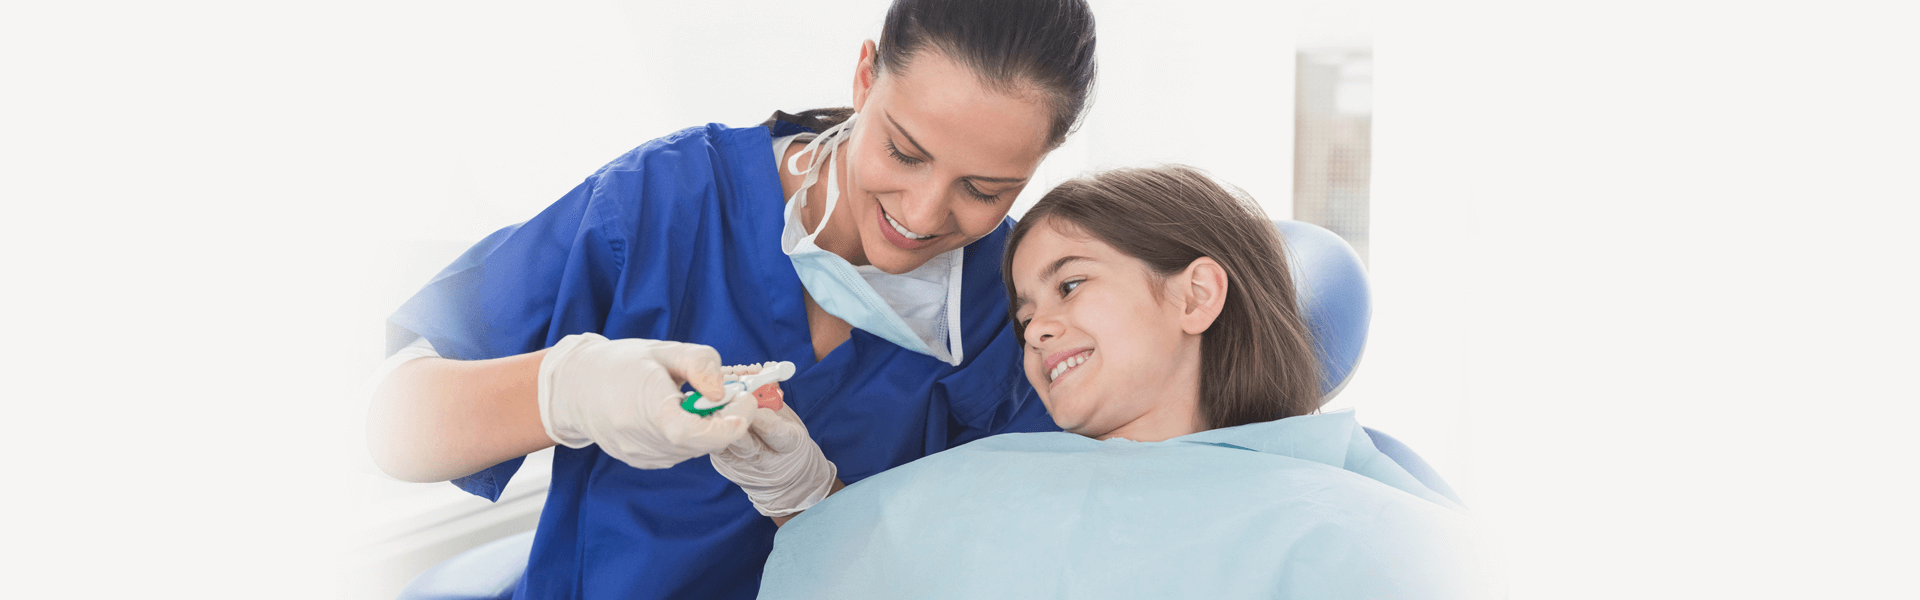 Praca dentysty dziecięcego